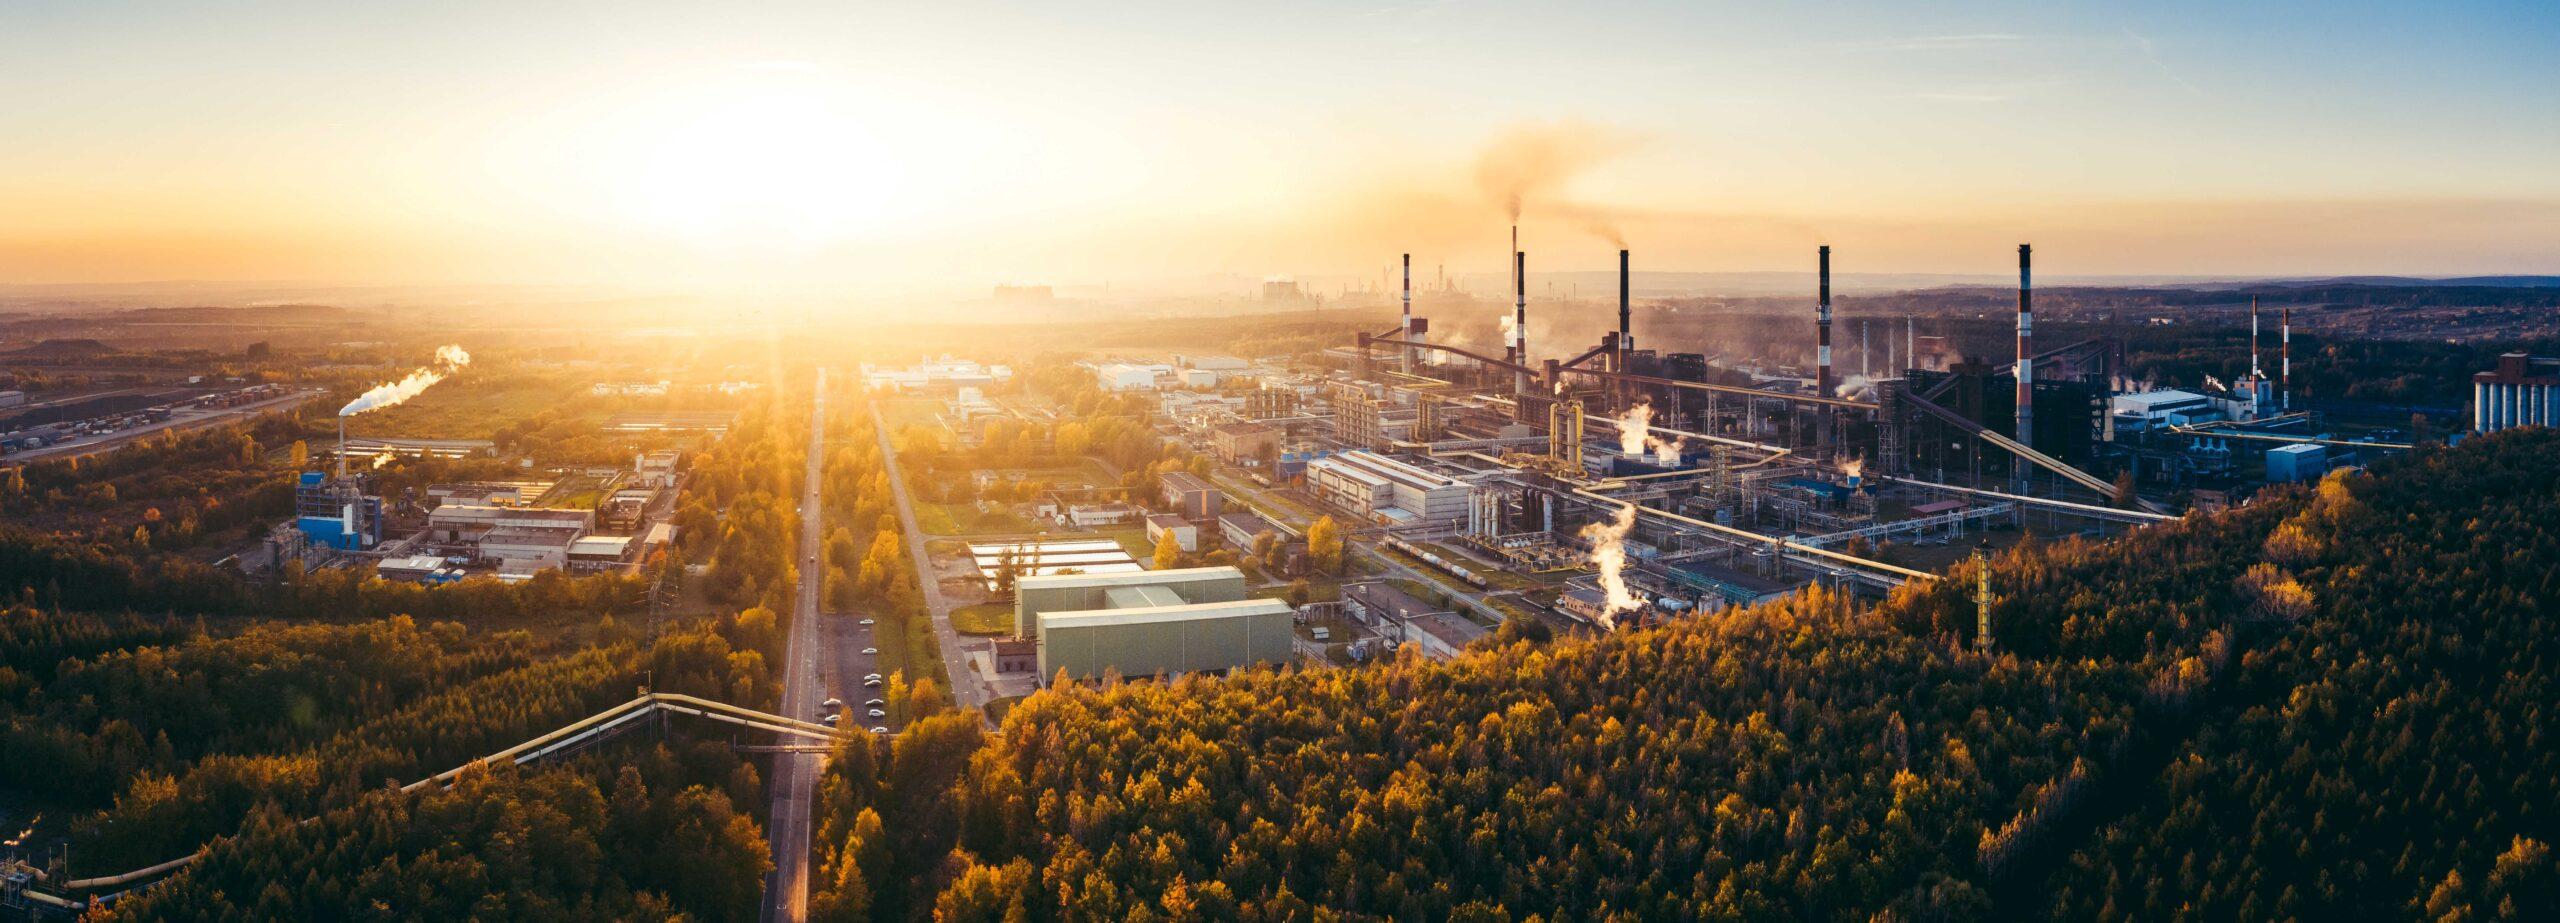 Industrielandschaft mit starker Umweltverschmutzung durch eine große Fabrik